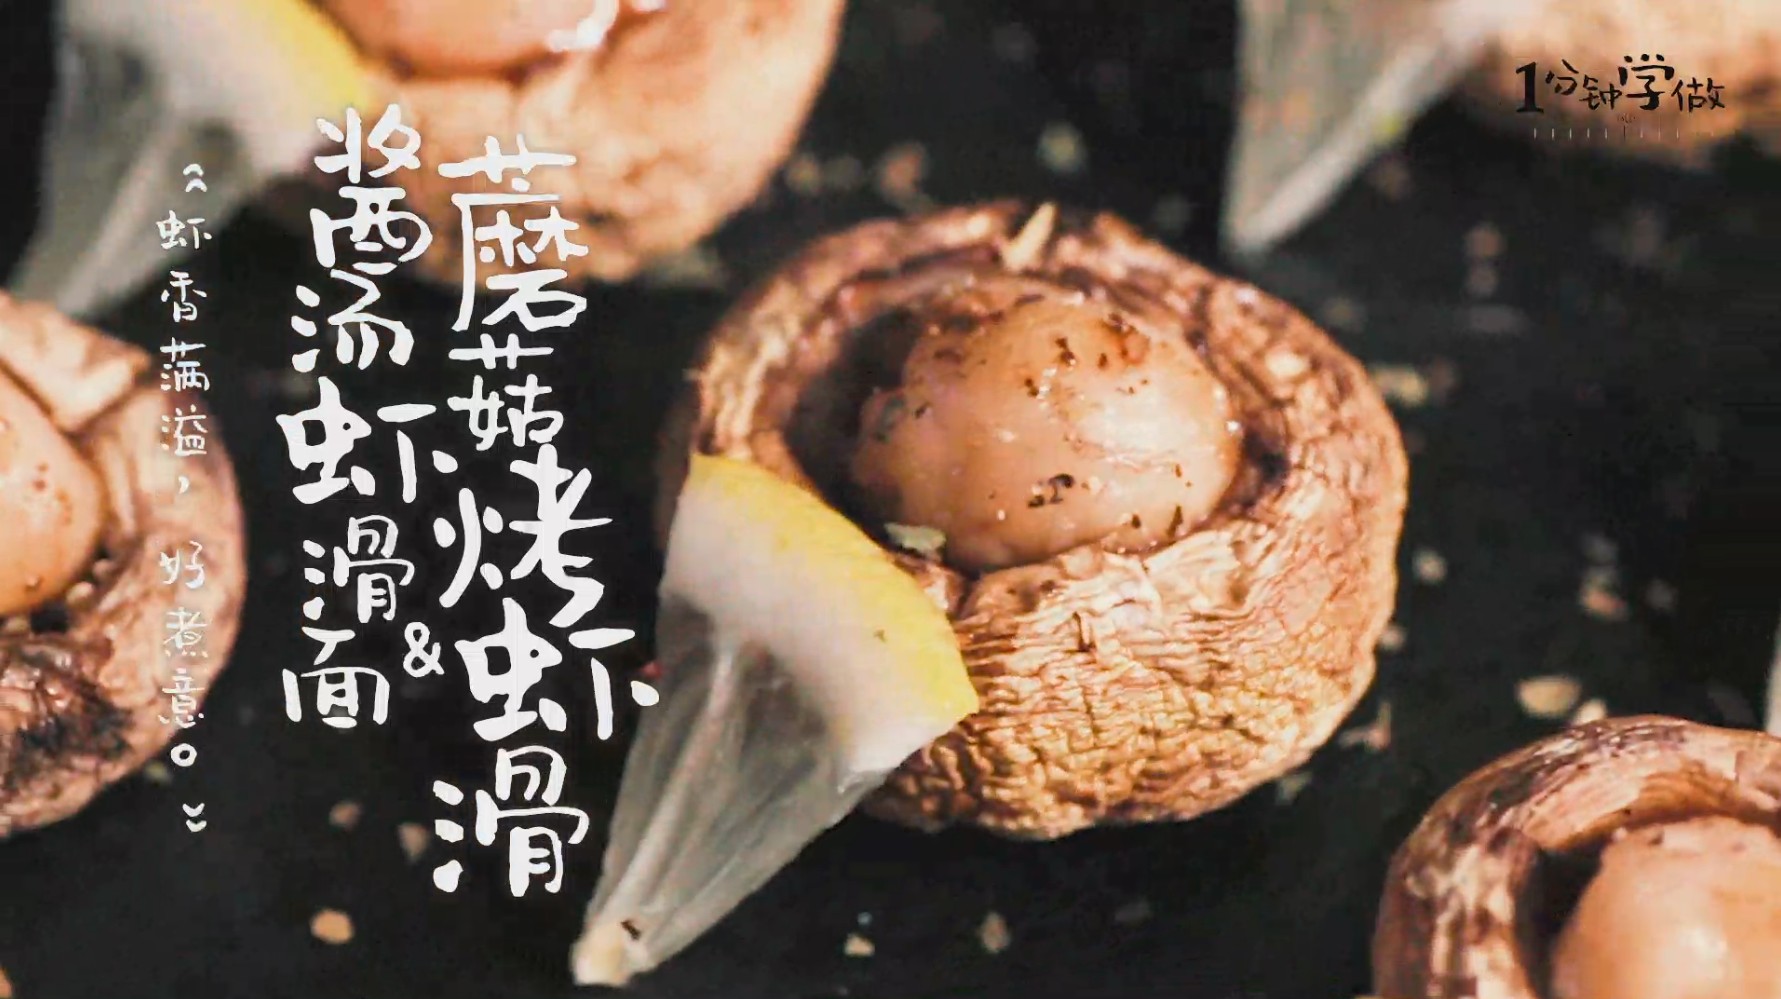 虾滑烤蘑菇&酱汤虾滑面成品图